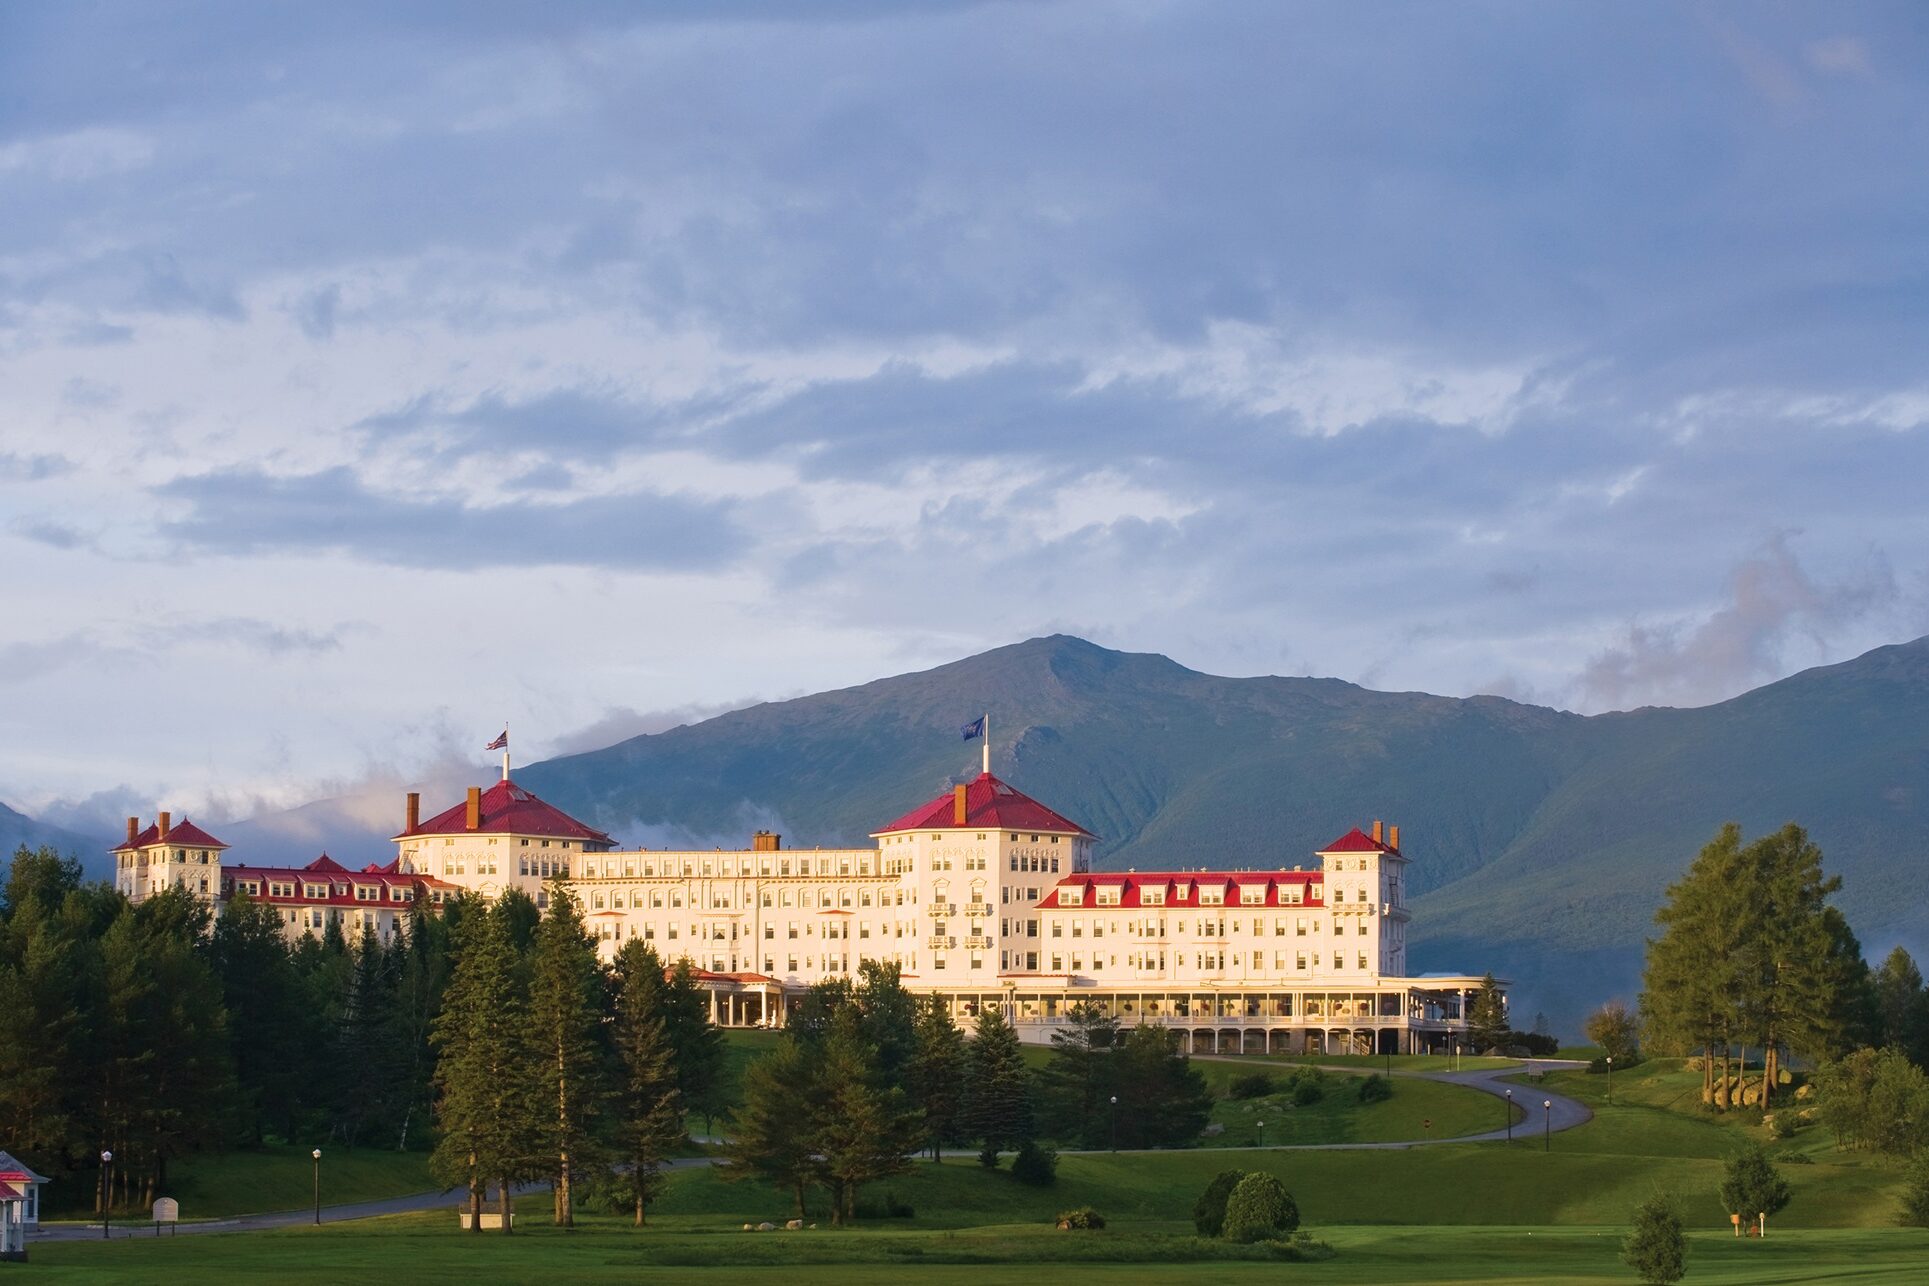 Omni Mount Washington, Bretton Woods, New Hampshire